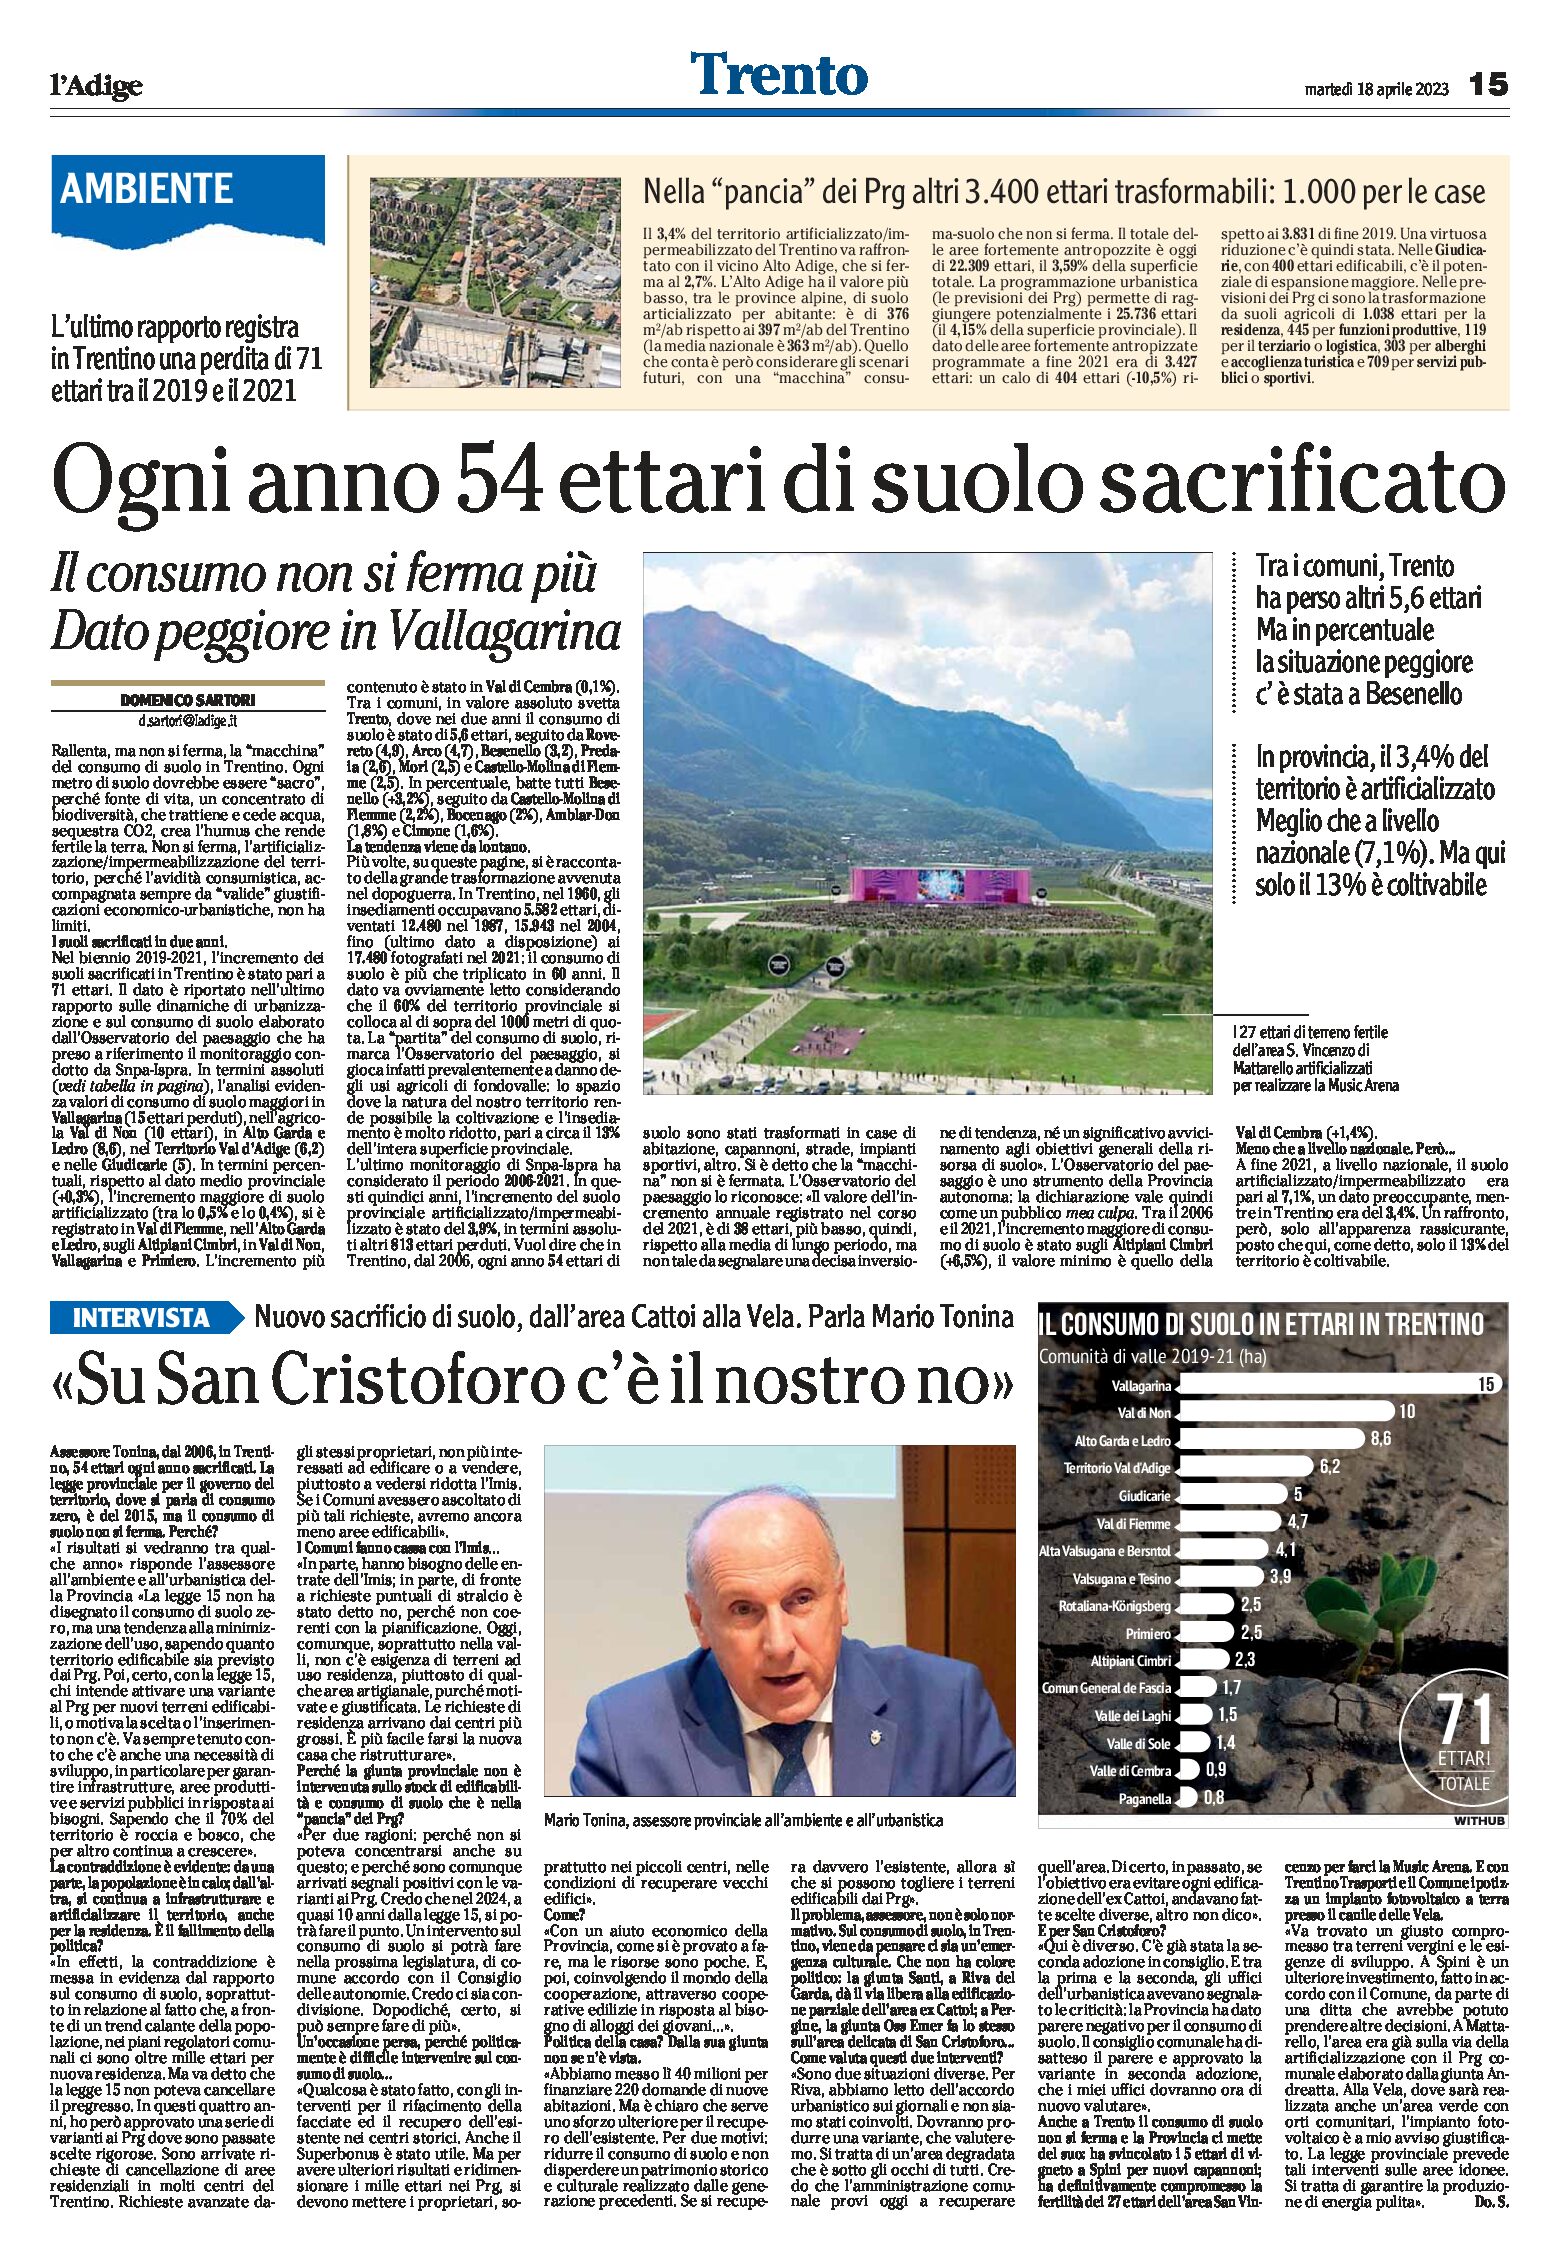 Trentino: ogni anno 54 ettari di suolo sacrificato. Nella “pancia” dei Prg altri 3.400 ettari trasformabili